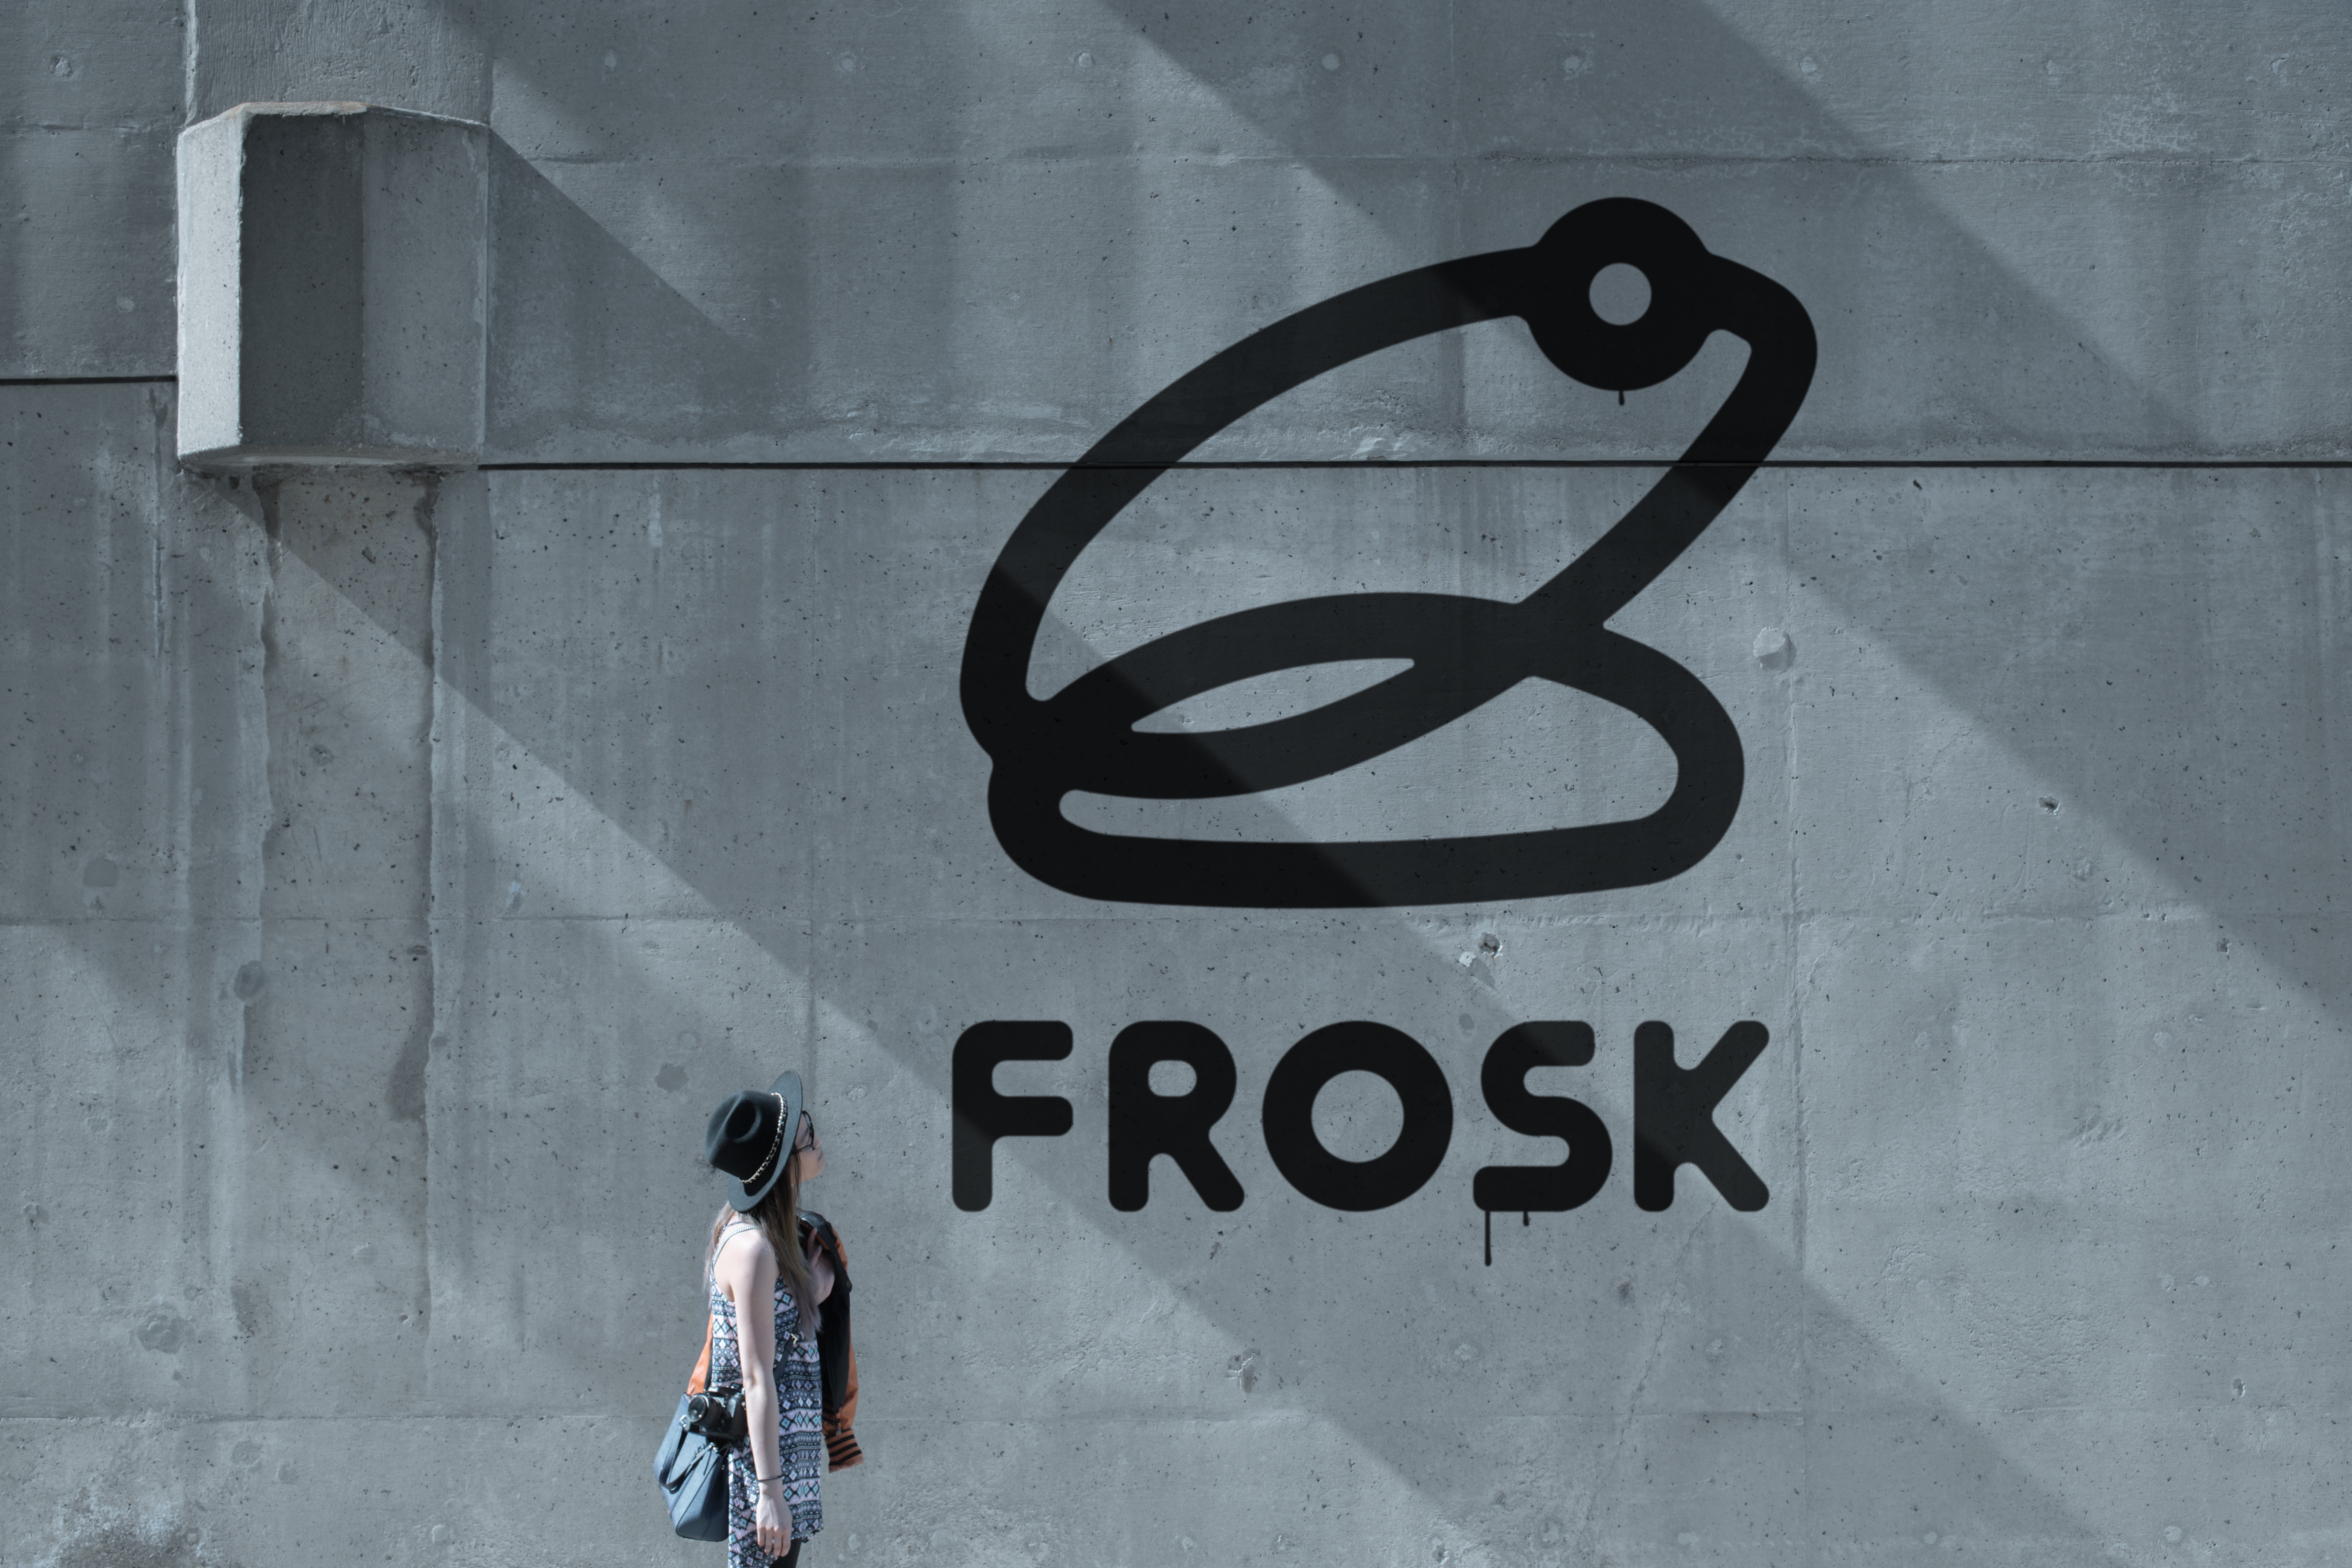 FROSK logo wall